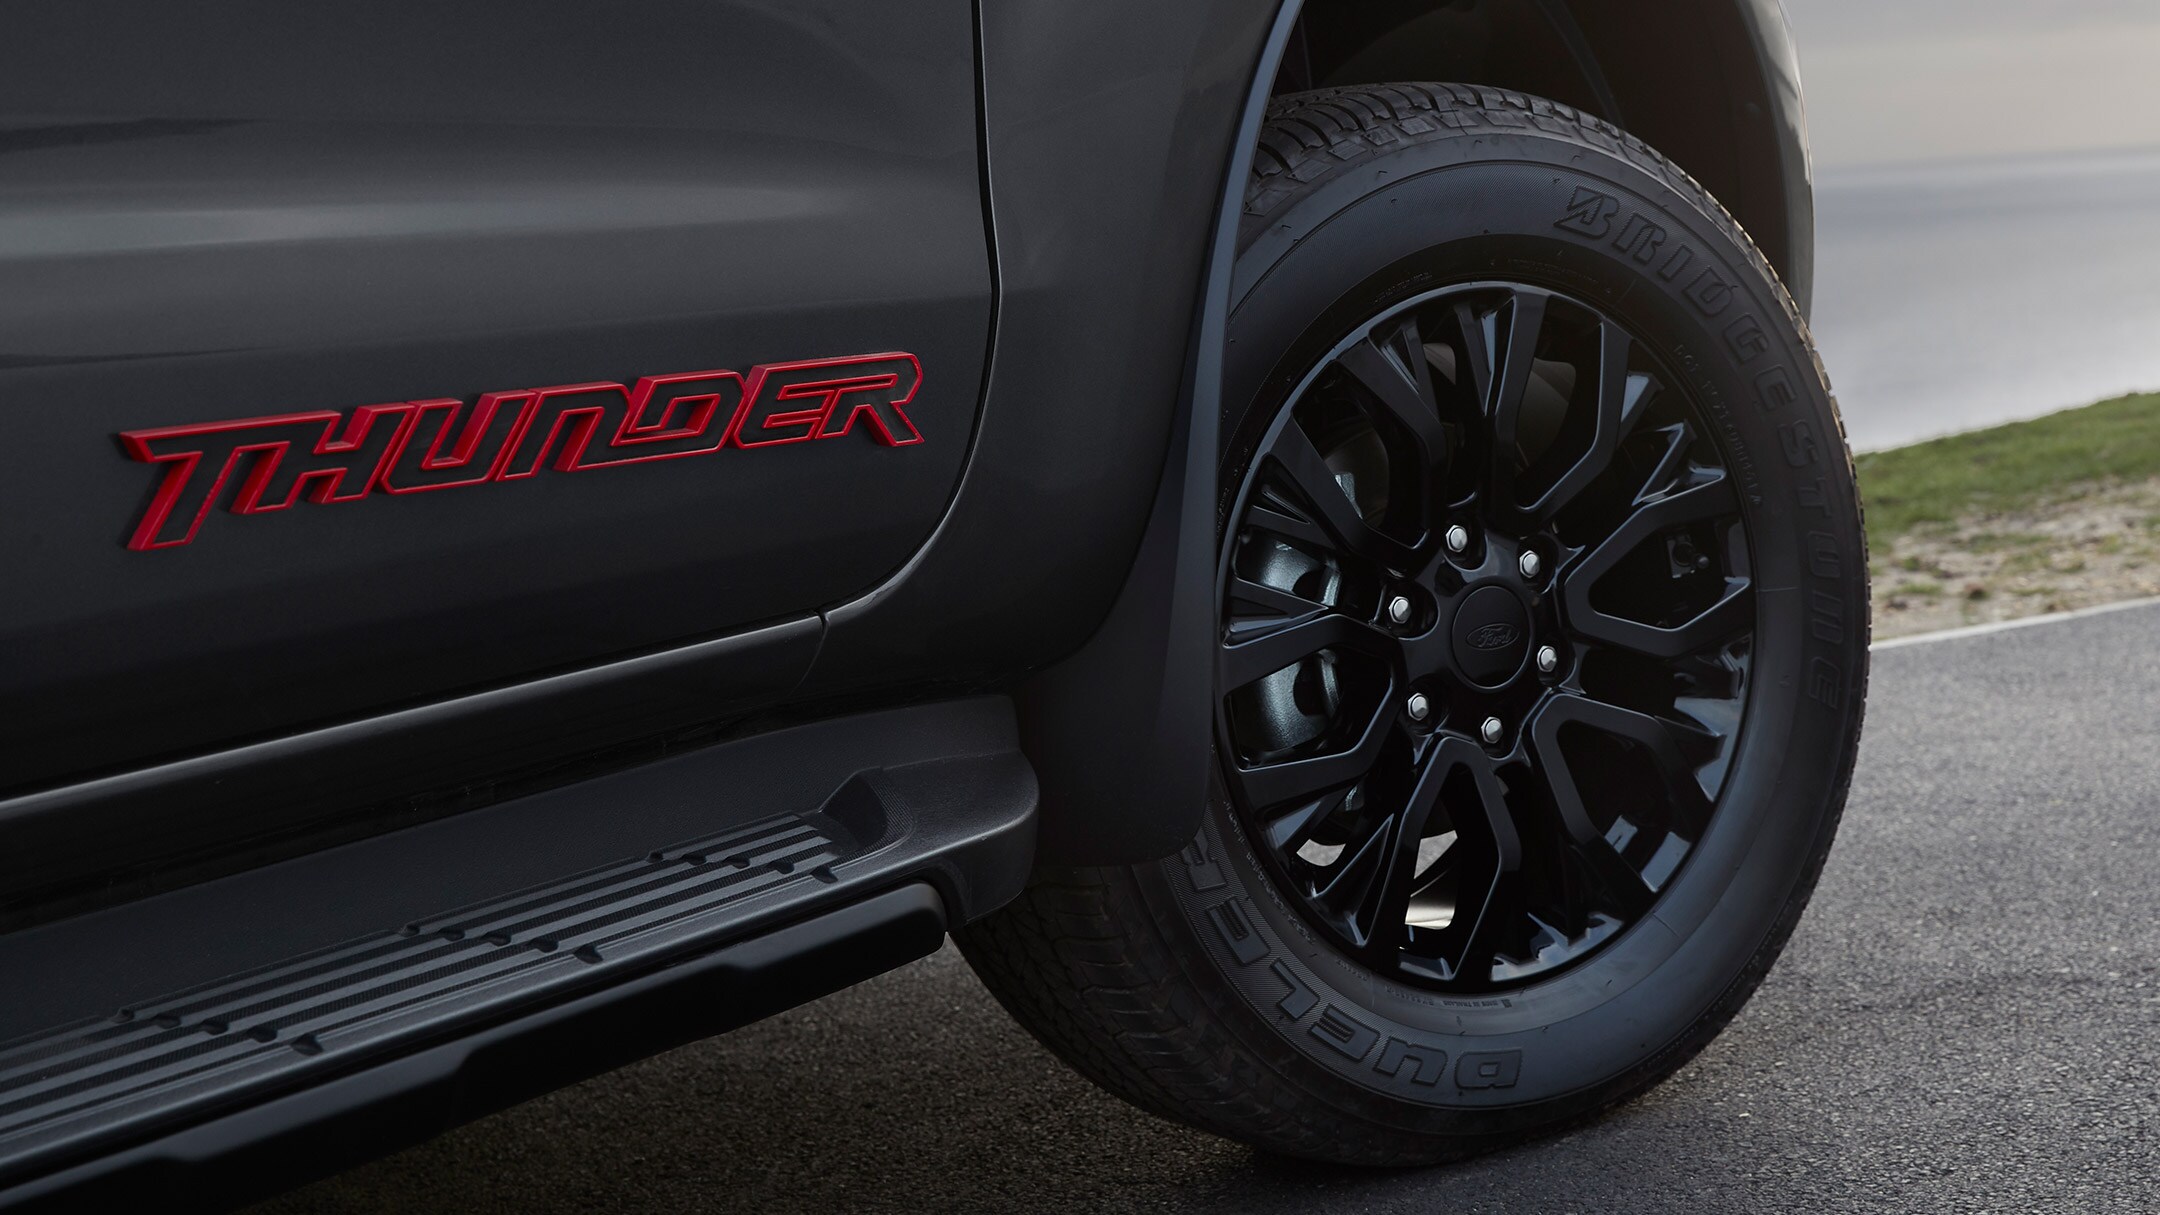 Ford Ranger Thunder logo close up